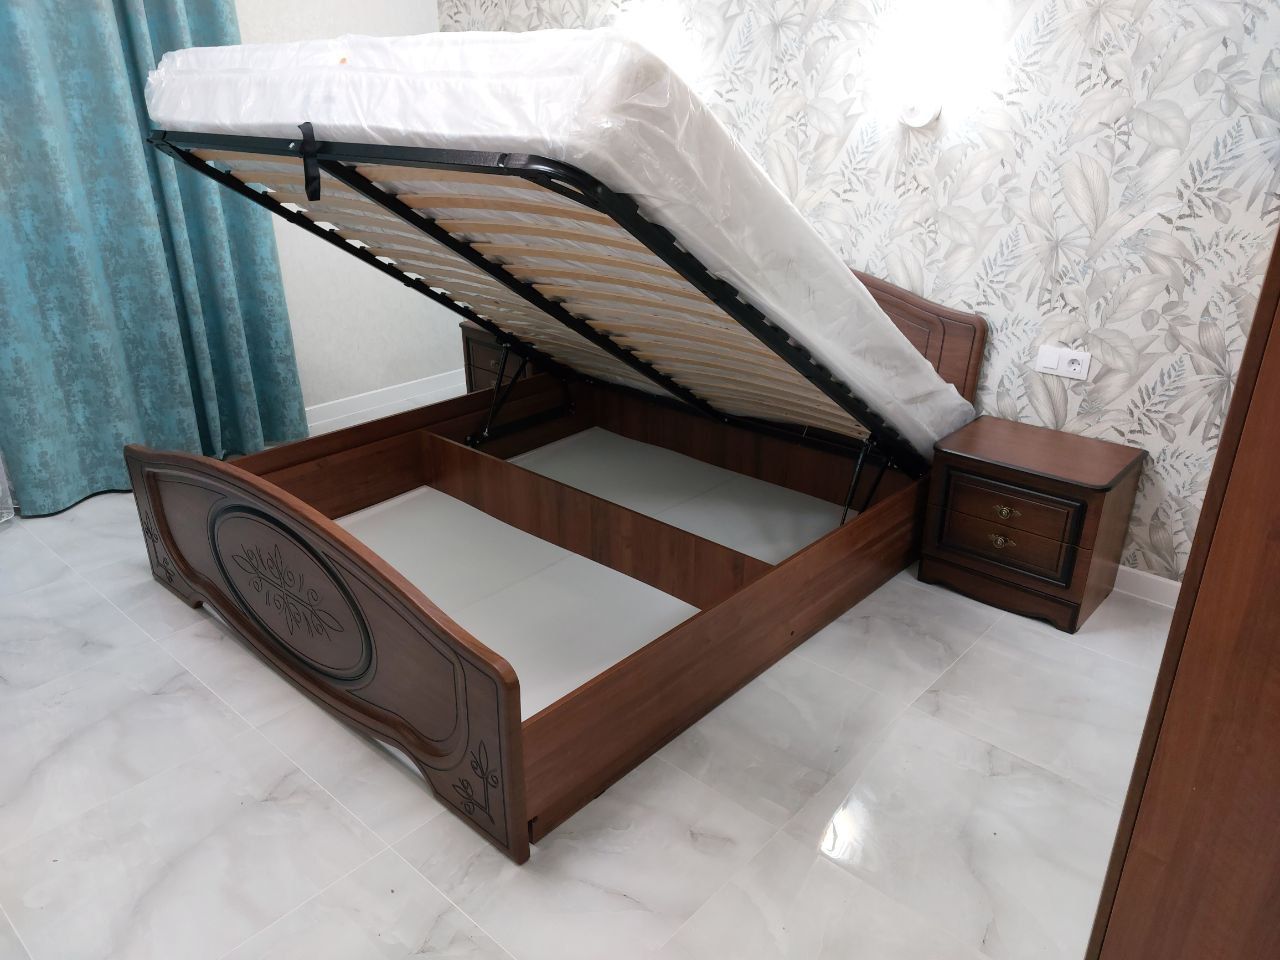 Двуспальная кровать "Натали" 160х200 с подъемным механизмом цвет клен/ясень бежевый изножье высокое